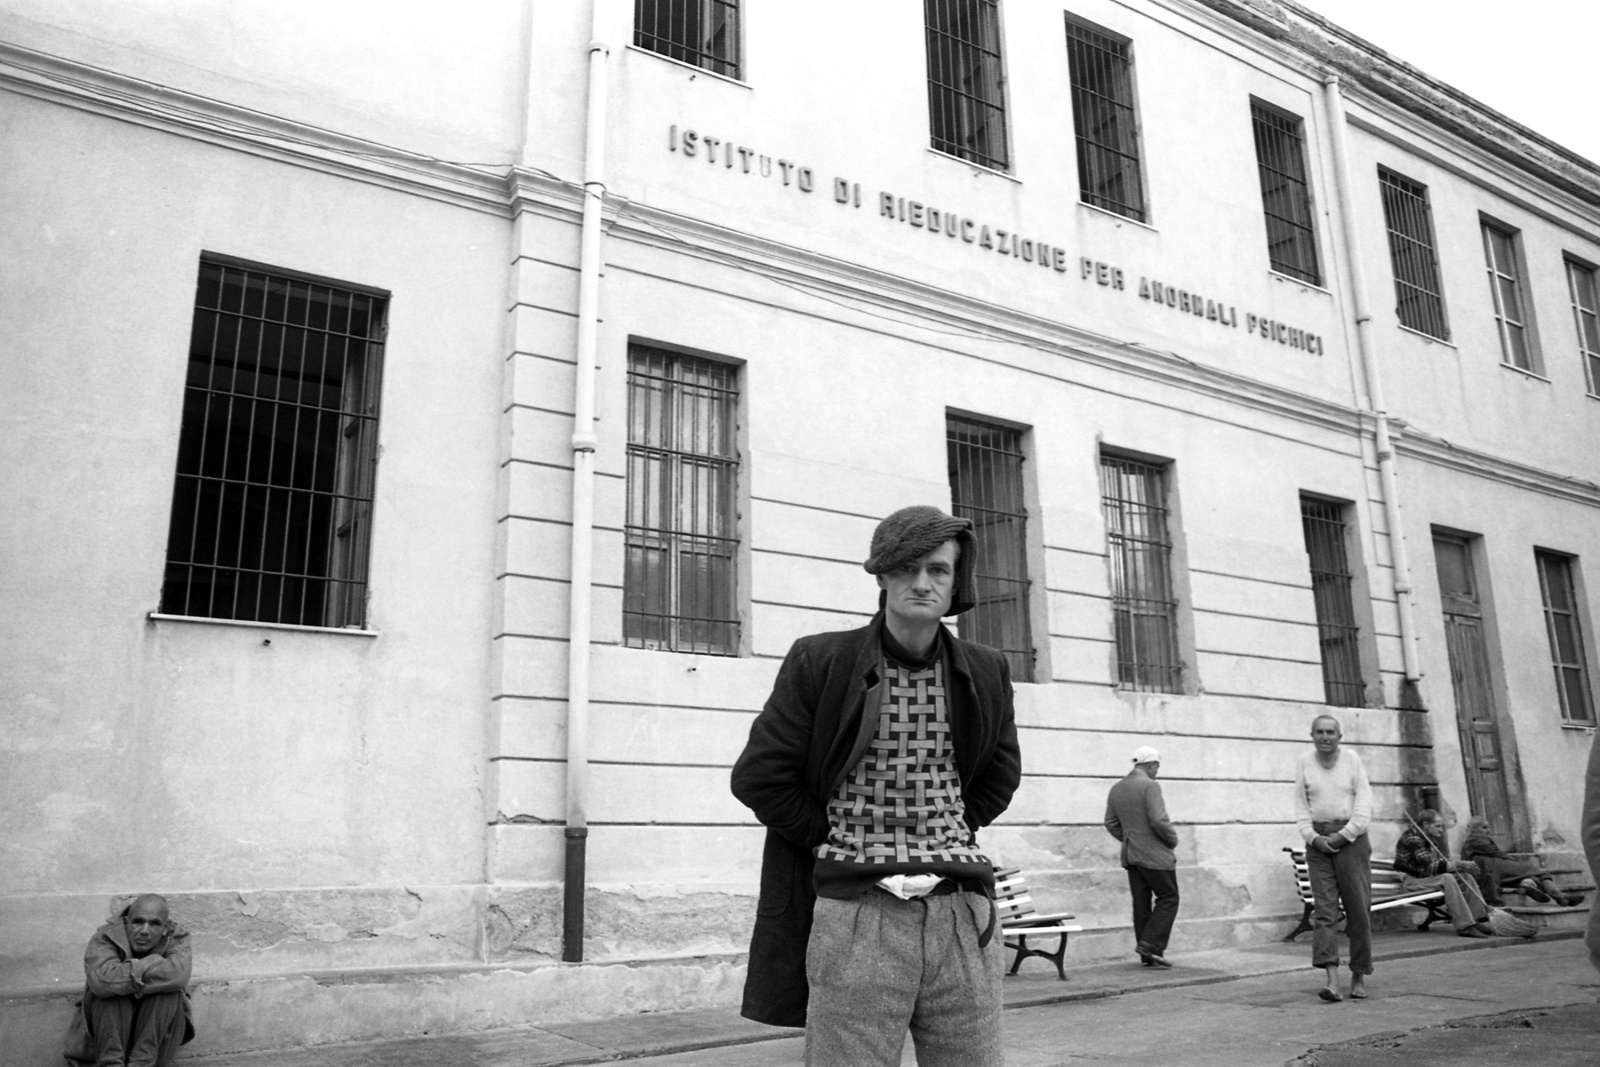 Prigionieri del silenzio - Viaggio nei manicomi calabresi - Ottobre-Novembre 1983